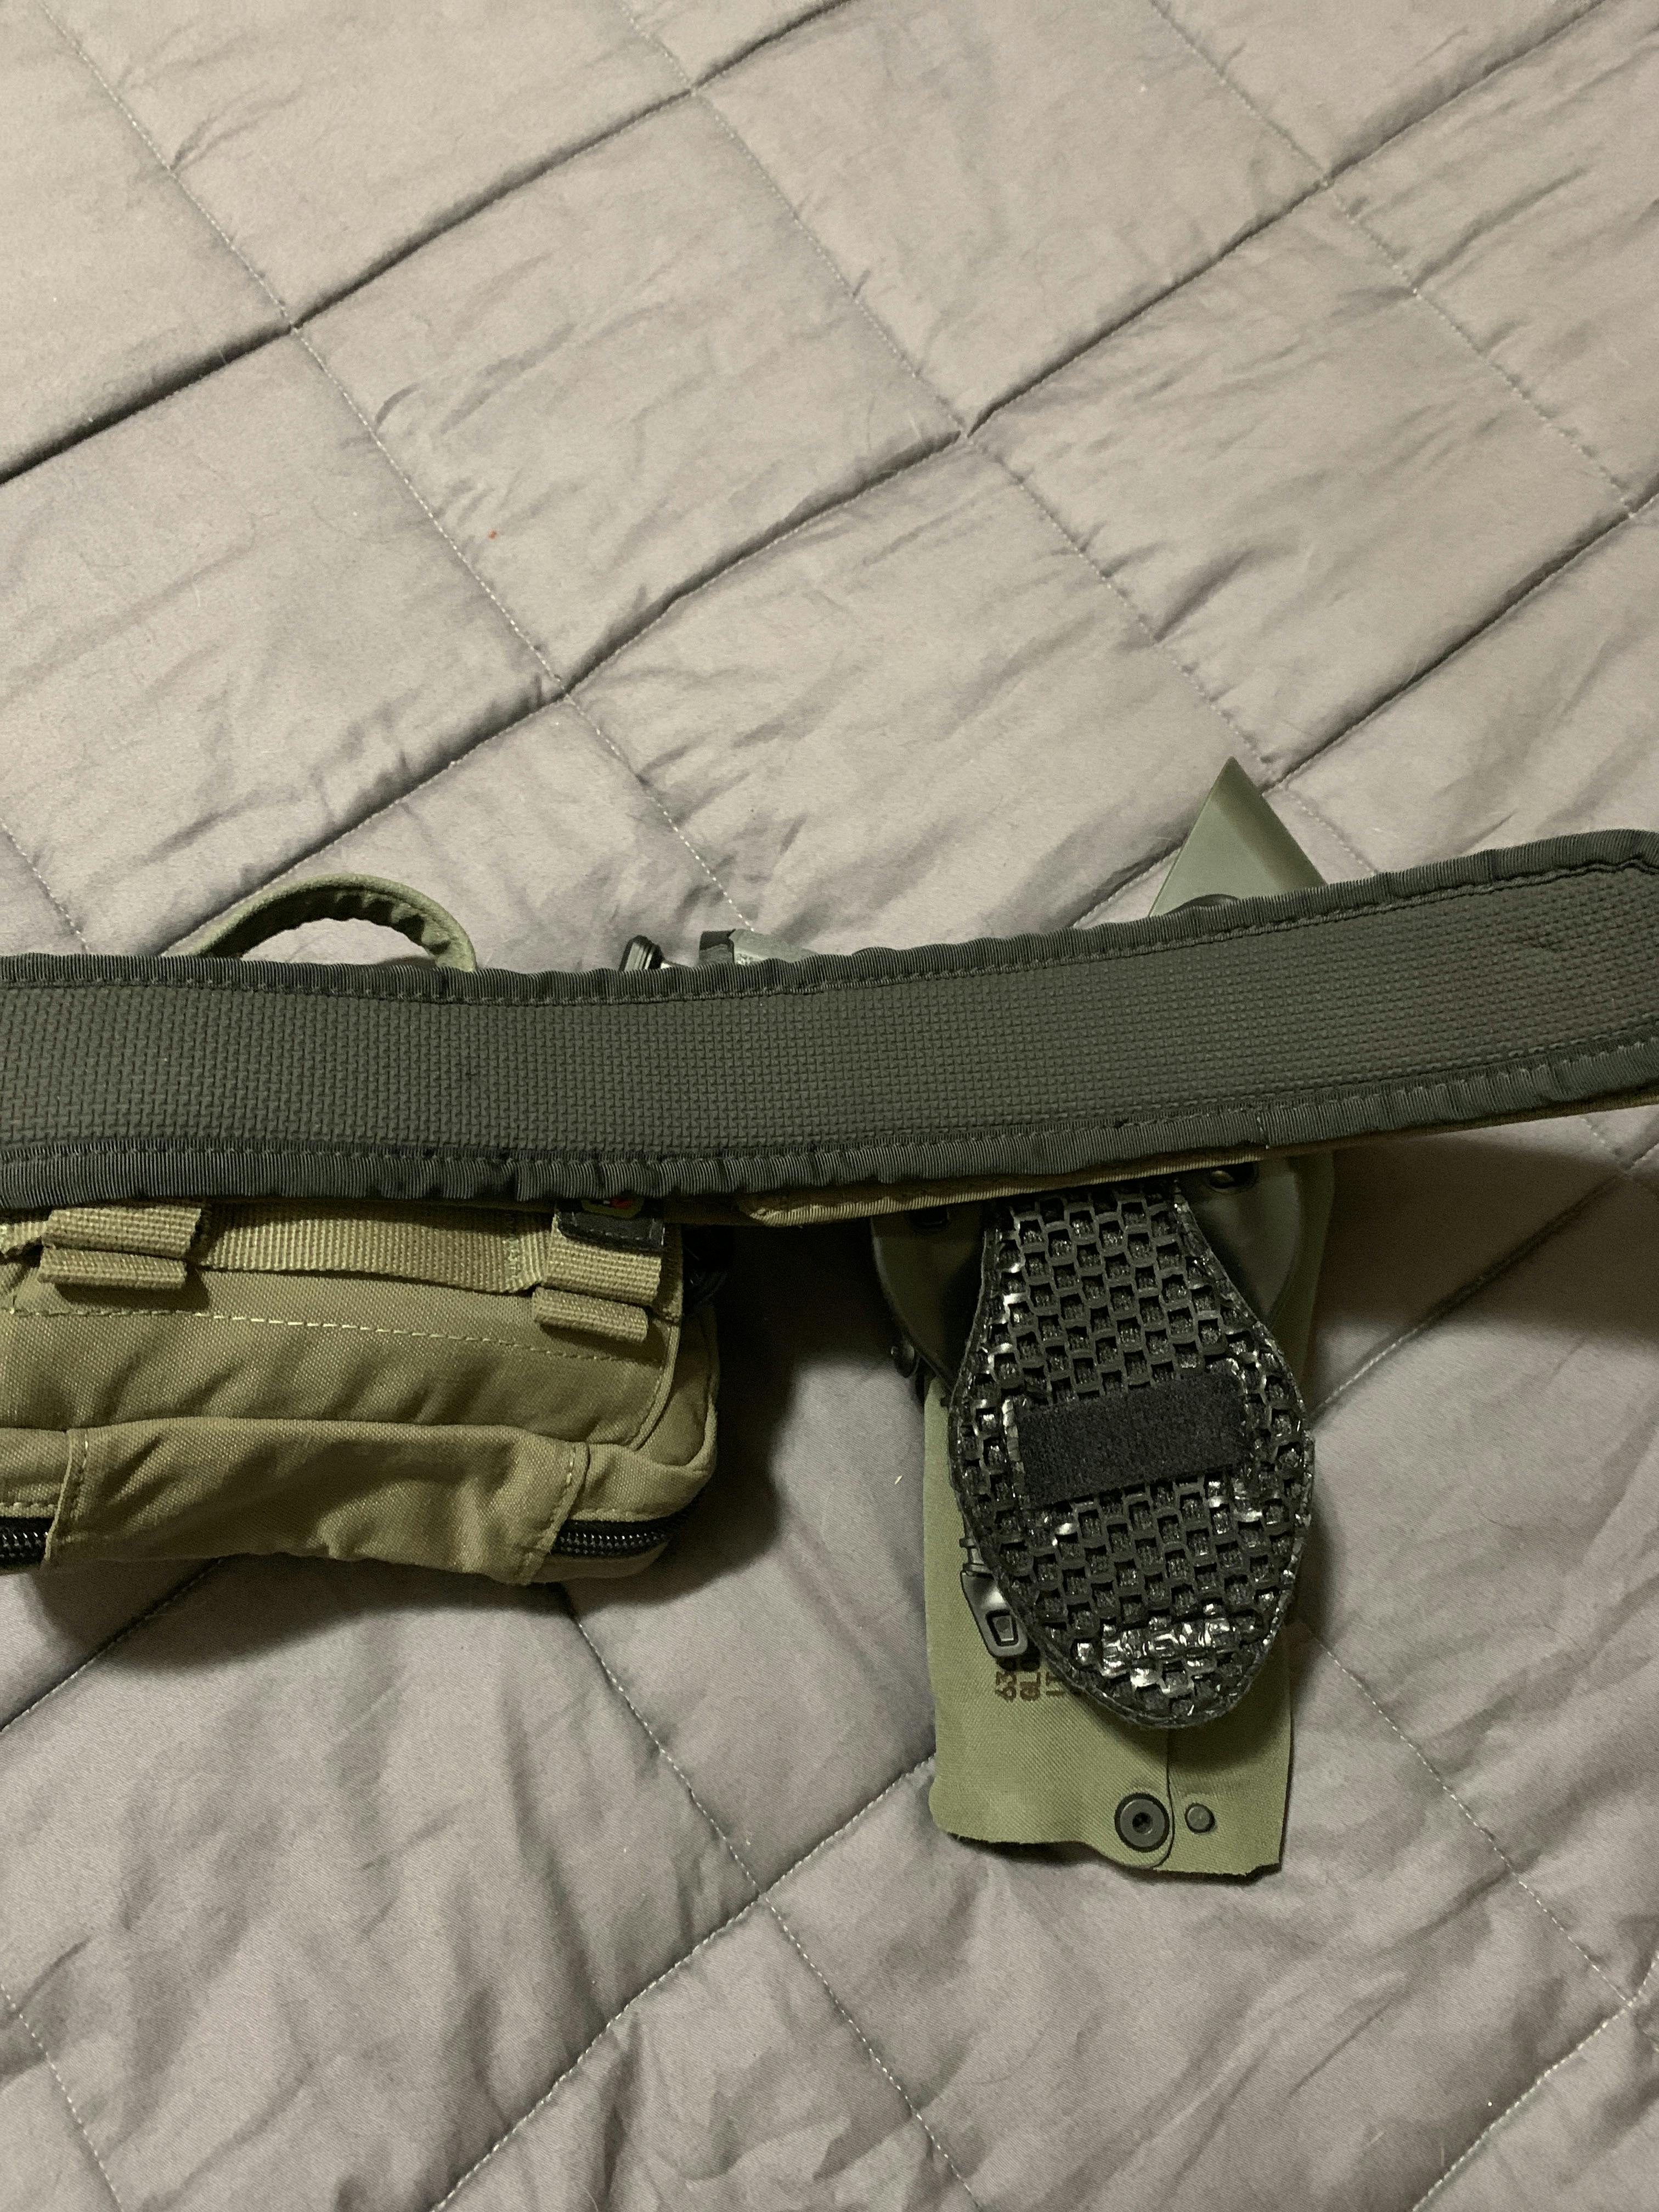 Ventilated Gun Belt Pads  Tactical Battle Belt Padding – Qore